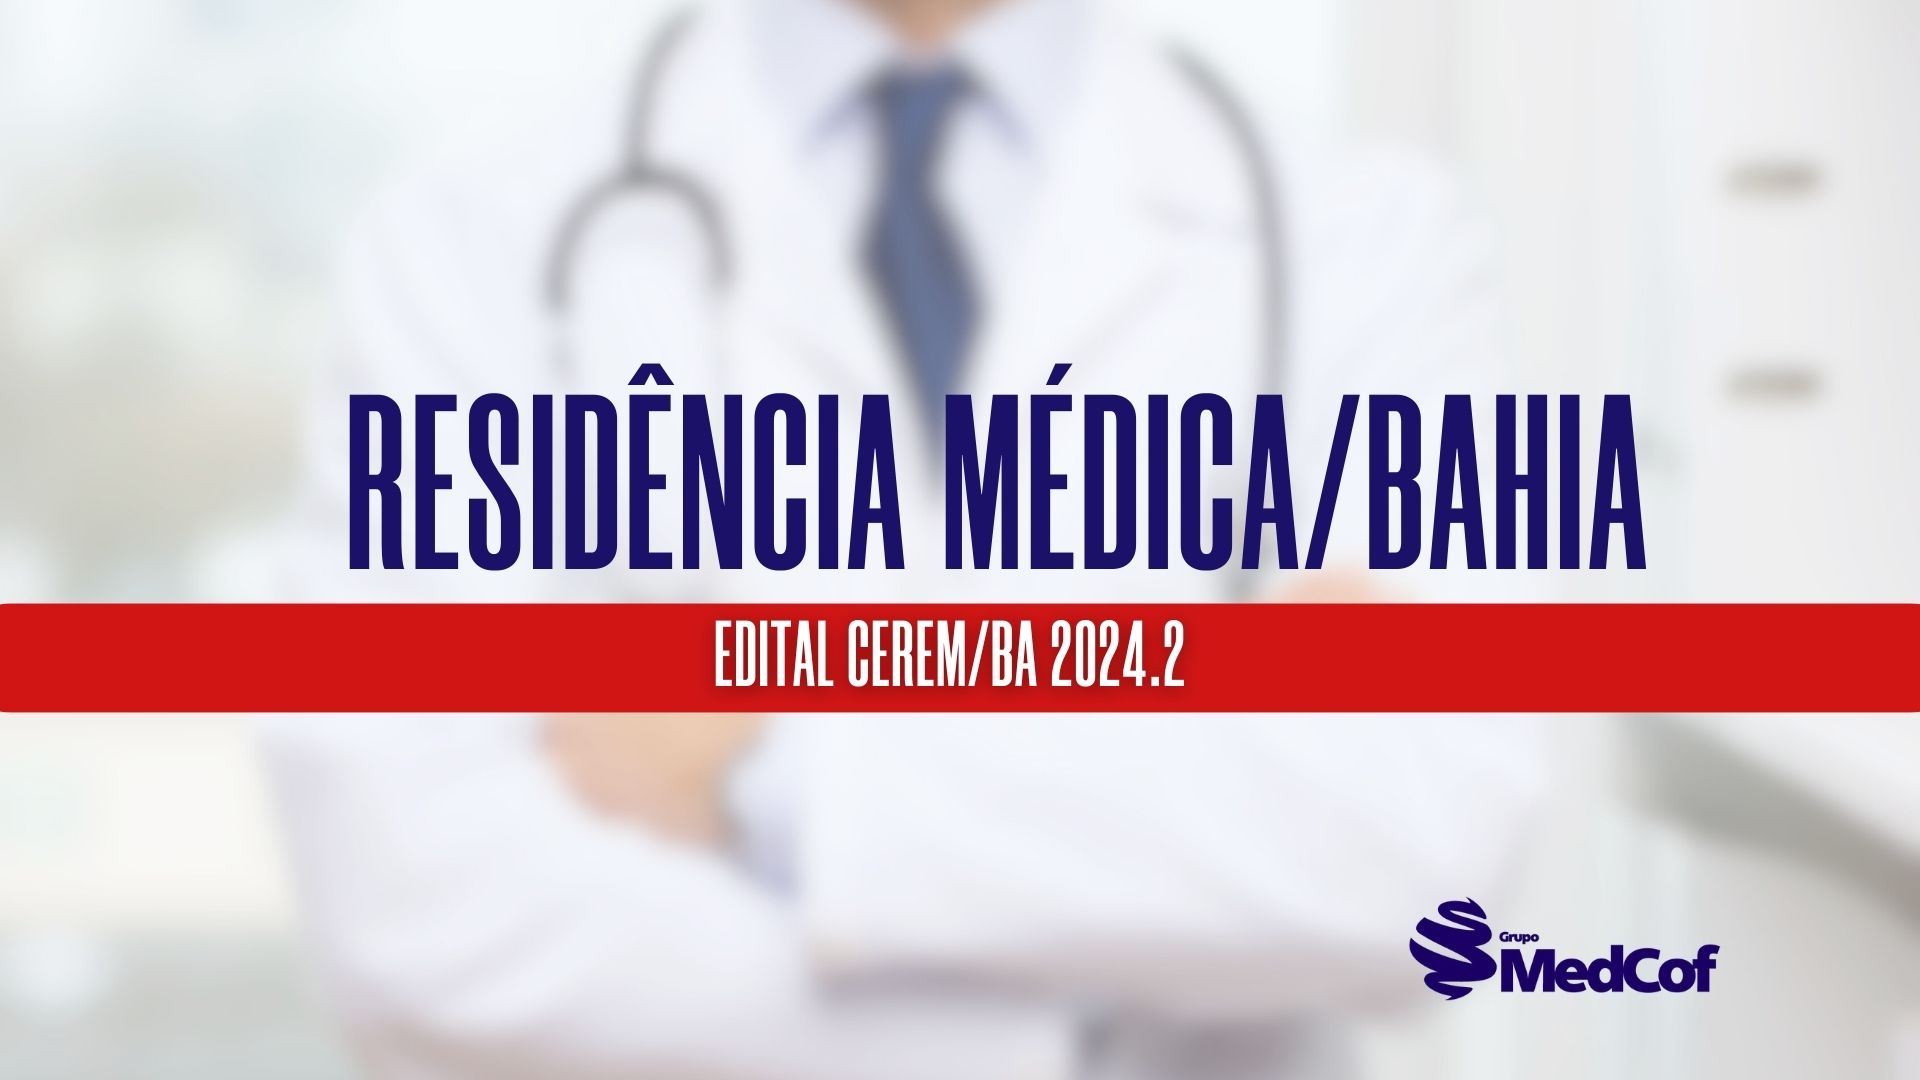 Processo Seletivo CEREM/BA: as inscrições para Residência Médica/Bahia 2024.2 estarão abertas de 16 de fevereiro a 6 de março de 2024.